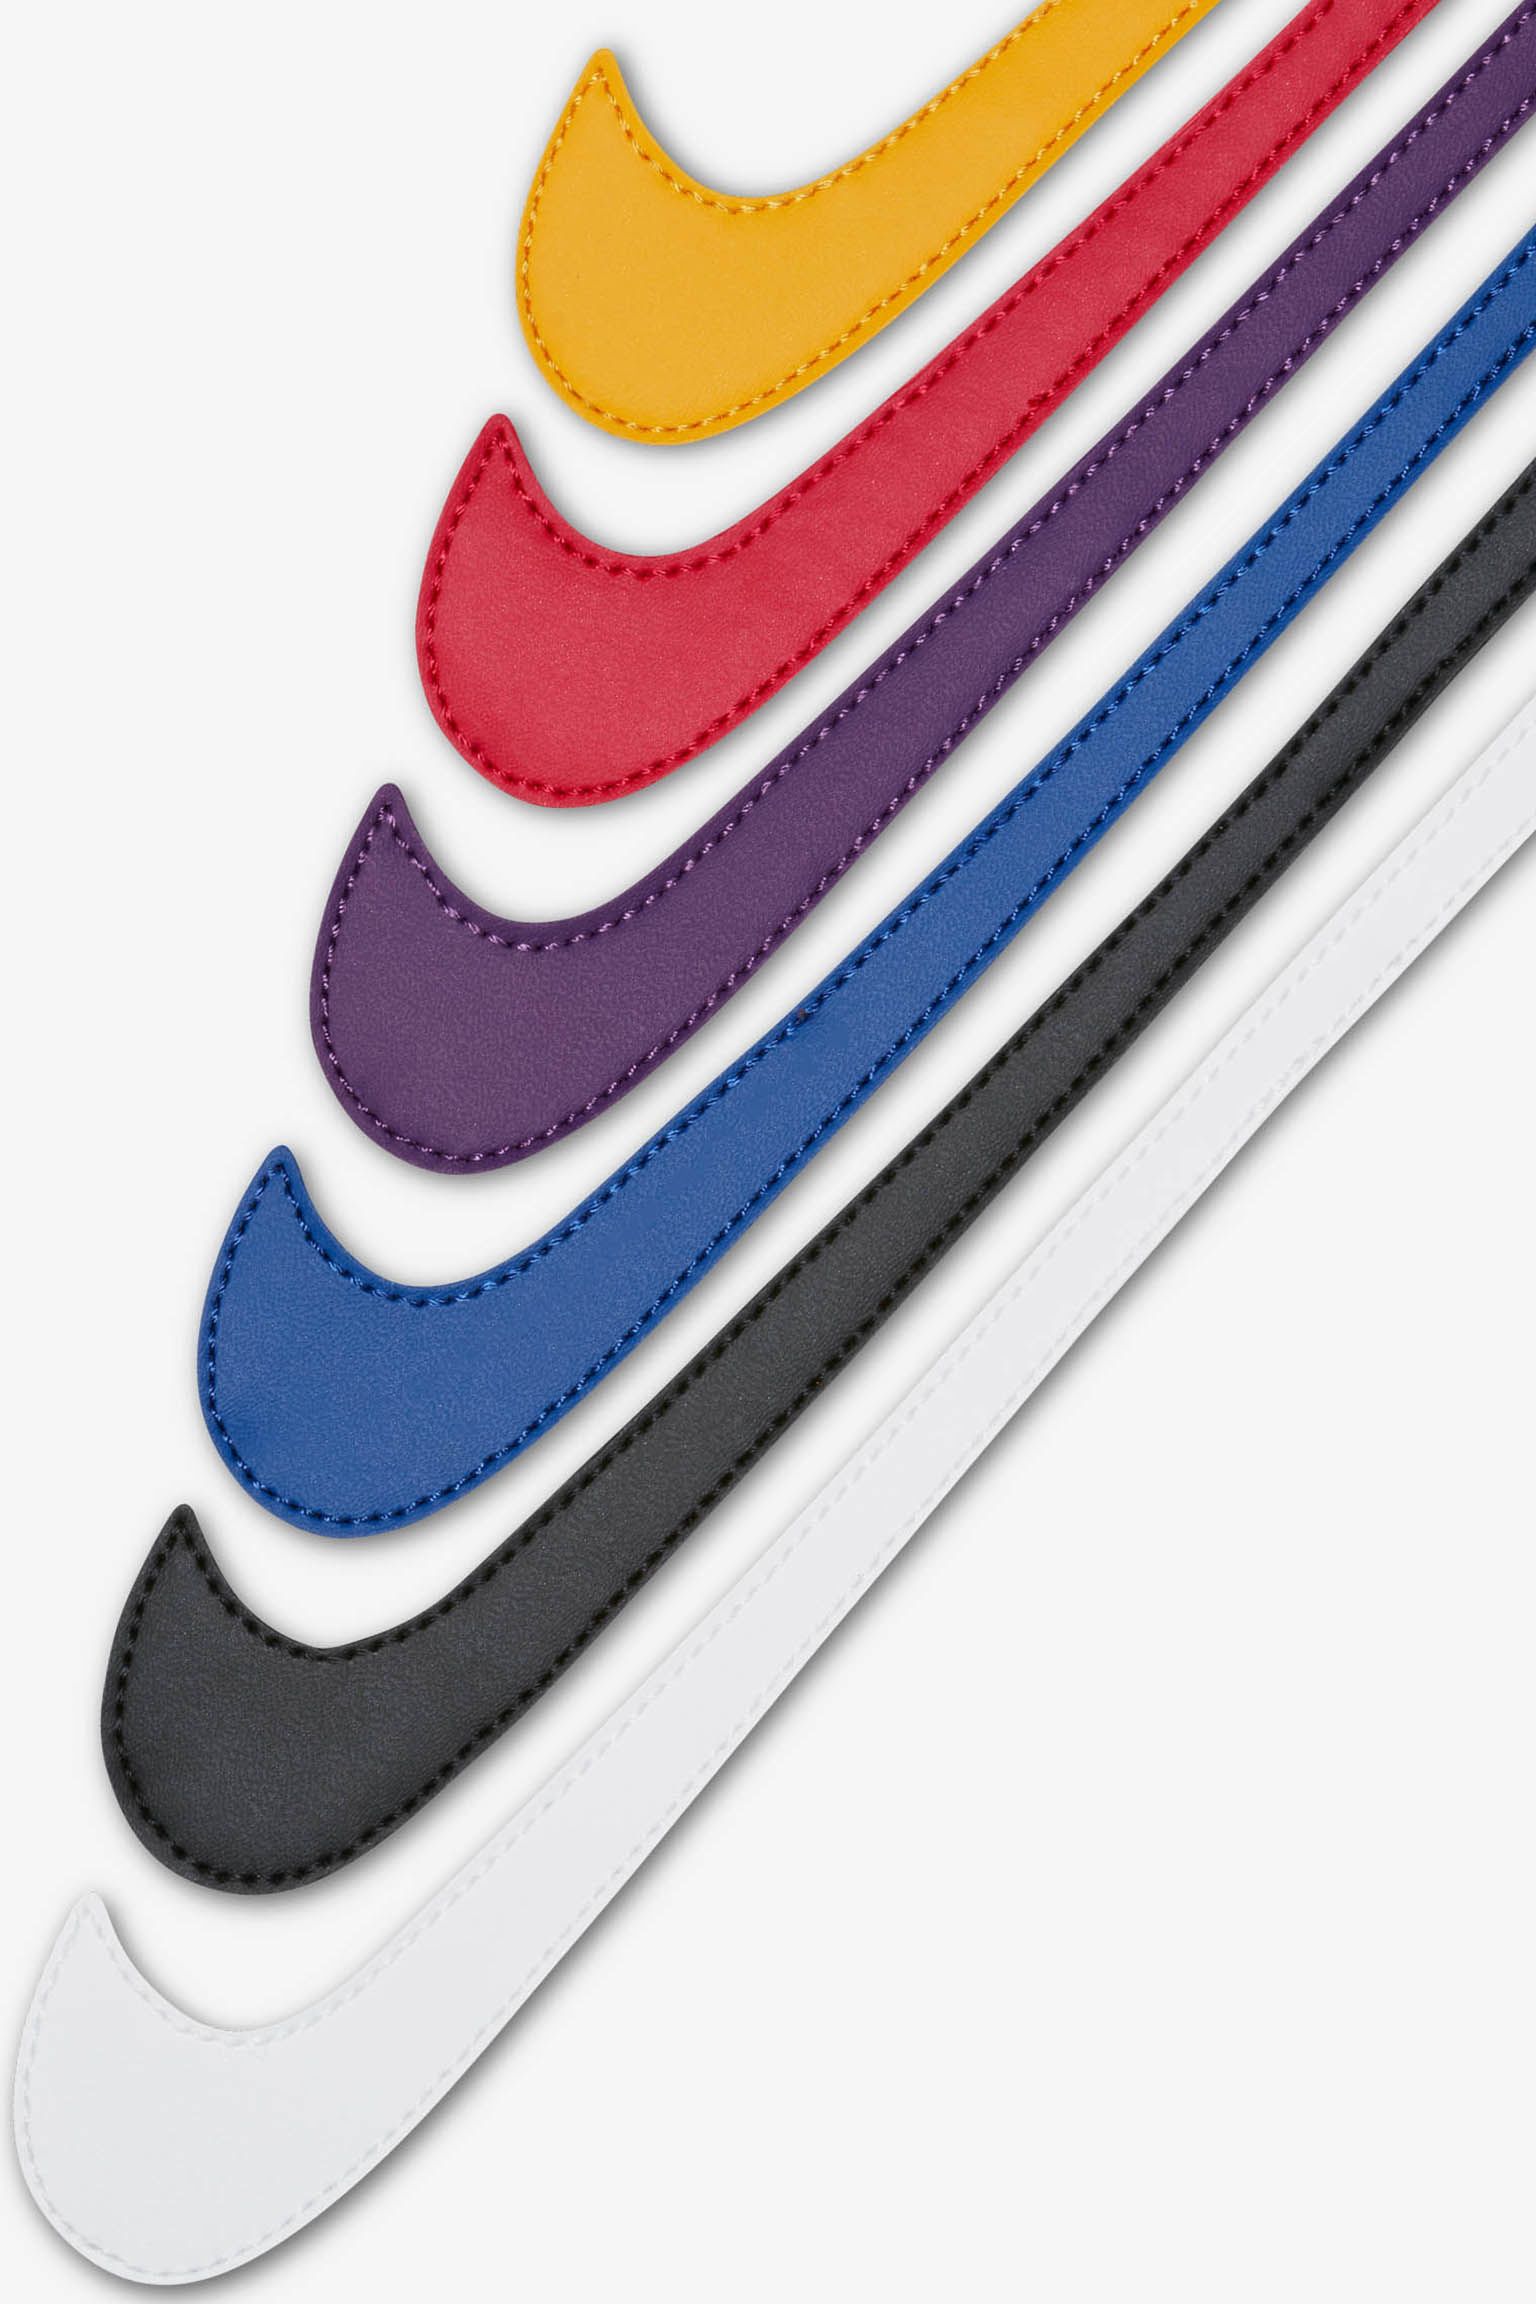 Detail Nike Swoosh Images Nomer 33